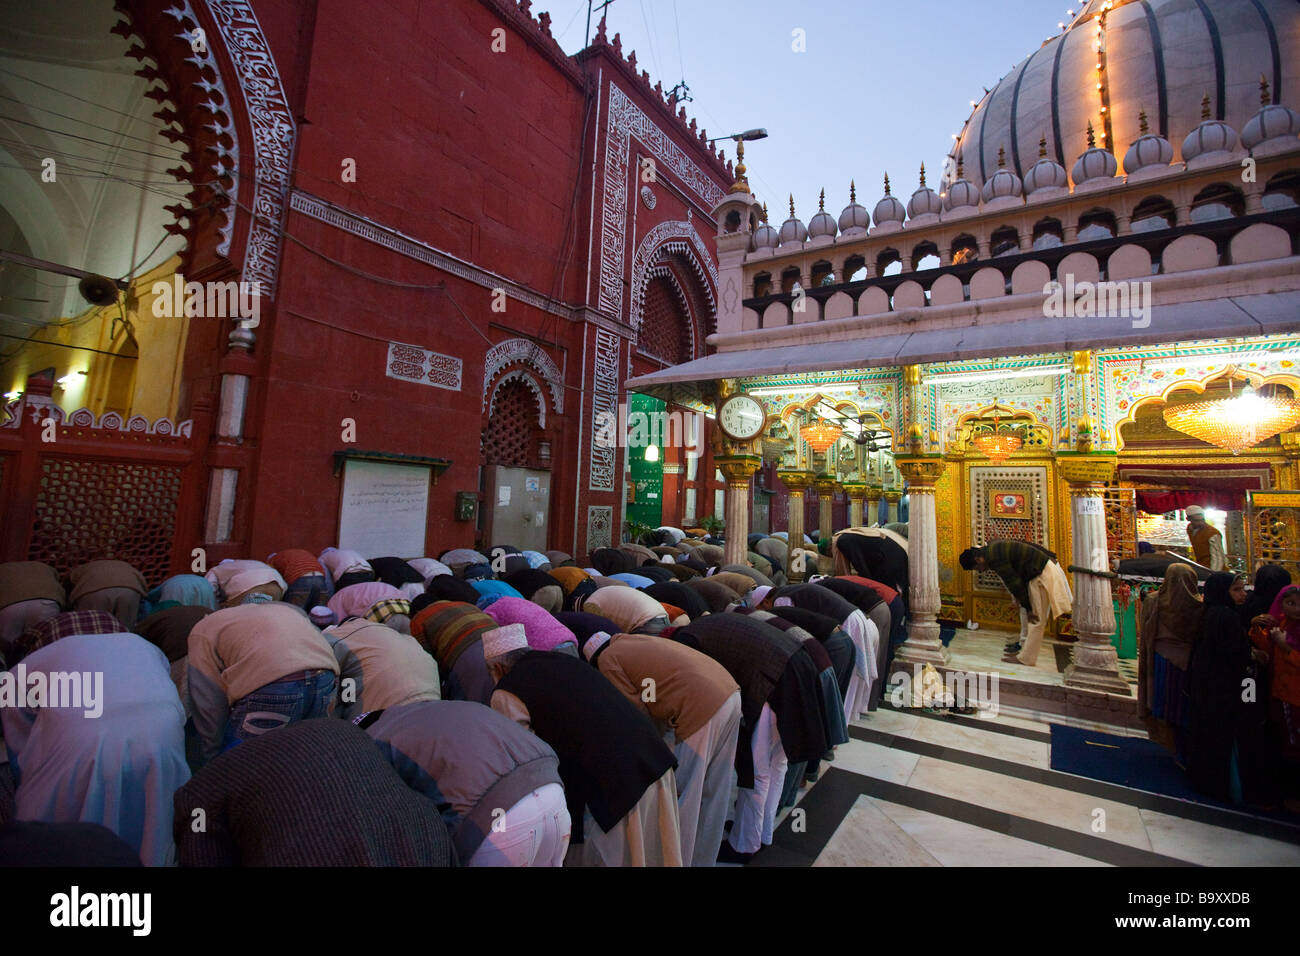 Prière à Hazrat Nizamuddin Dargah sanctuaire musulman dans Old Delhi Inde Banque D'Images